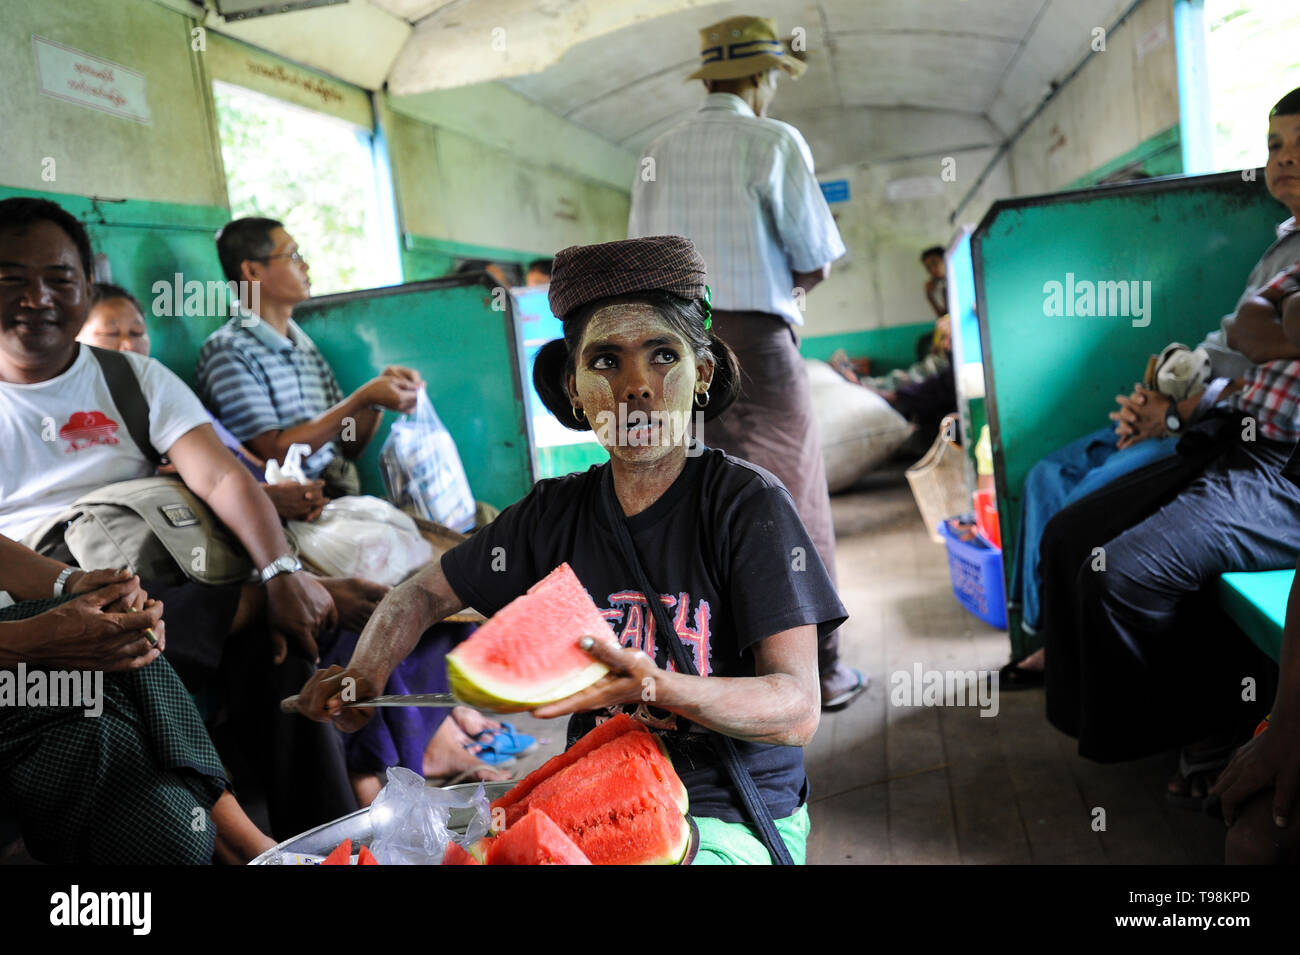 02.09.2013, Yangon, Myanmar - eine Frau verkauft frische Wassermelone in einem Zugabteil der Ringbahn. Ihr Gesicht ist mit den typischen Tha verschmiert Stockfoto